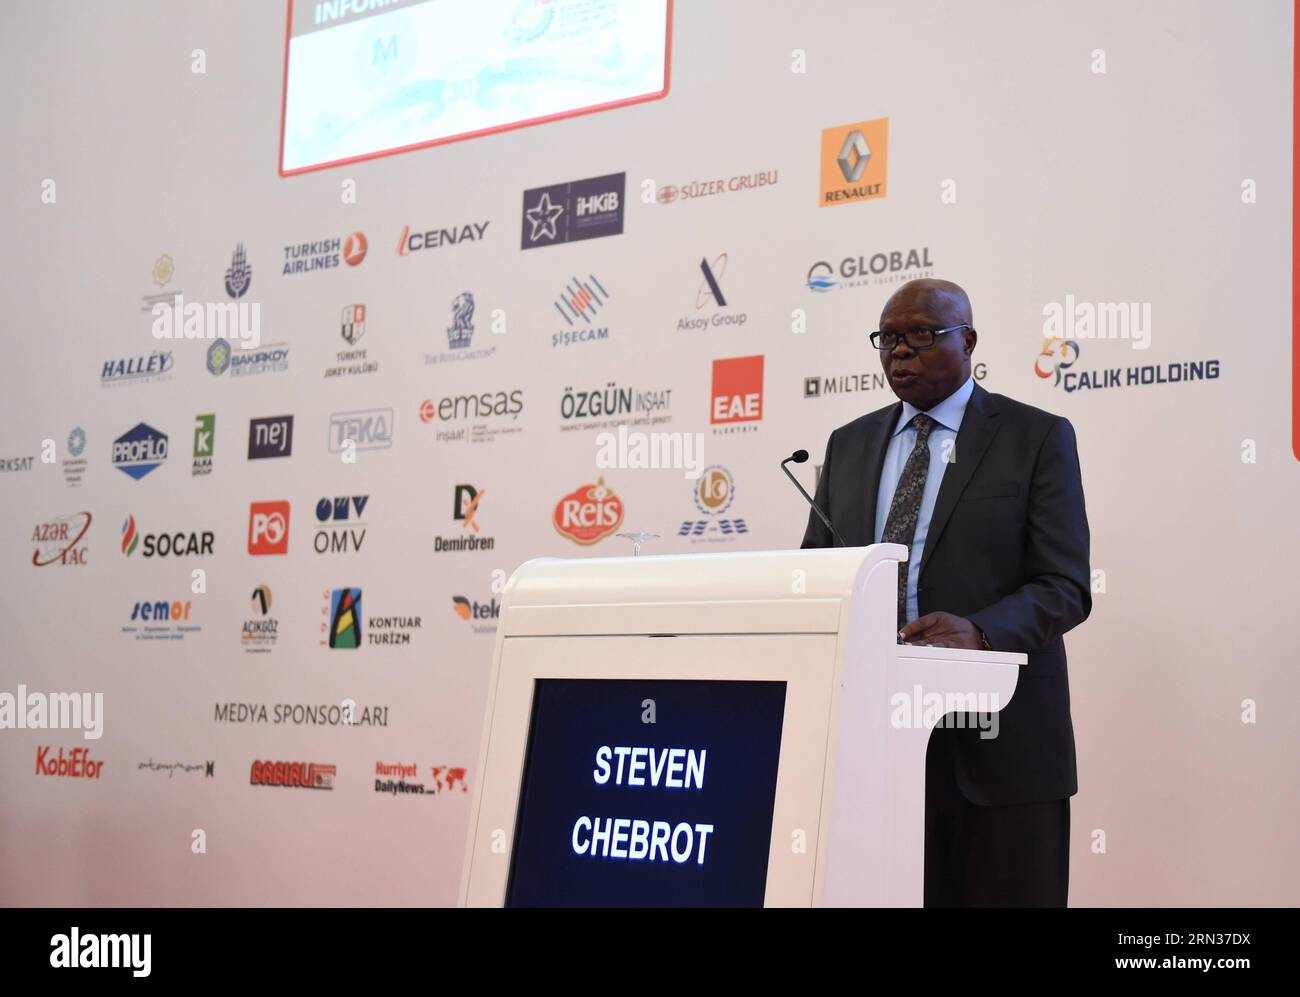 ISTANBUL, avril 8,2015 -- Steven Chebrot, ministre d'État ougandais aux Transports, prononce un discours au forum de la route de la soie du 18e Sommet de l'économie eurasienne à Istanbul, Turquie, le 8 avril 2015. L'initiative de la route de la soie a été présentée comme le nouveau modèle de coopération pour le 21e siècle lors du Sommet de l'économie eurasienne à Istanbul mercredi. ) TURQUIE-ISTANBUL-SOMMET DE L'ÉCONOMIE EURASIENNE HexCanling PUBLICATIONxNOTxINxCHN Istanbul avril 8 2015 Steven les ministres d'État aux Transports de l'Ouganda prononce un discours AU Forum de la route de la soie du 18e Sommet de l'économie EURASIENNE à Istanbul, Turquie, avril 8 2 Banque D'Images